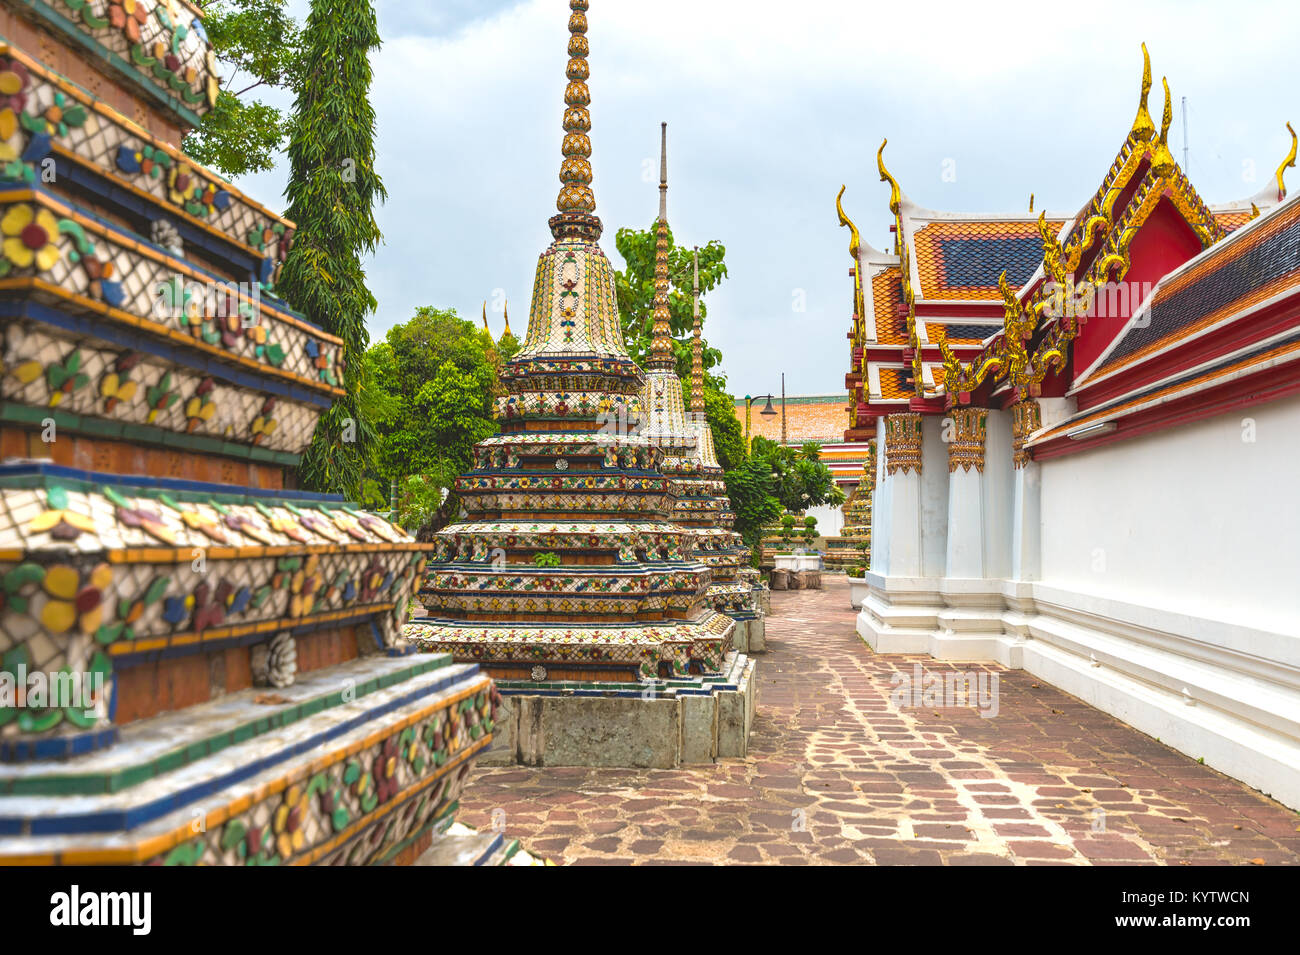 Anzeigen von dekorativen Pagoden und Gebäude in buddhistischen Tempel Wat Pho, Bangkok, Thailand. Stockfoto